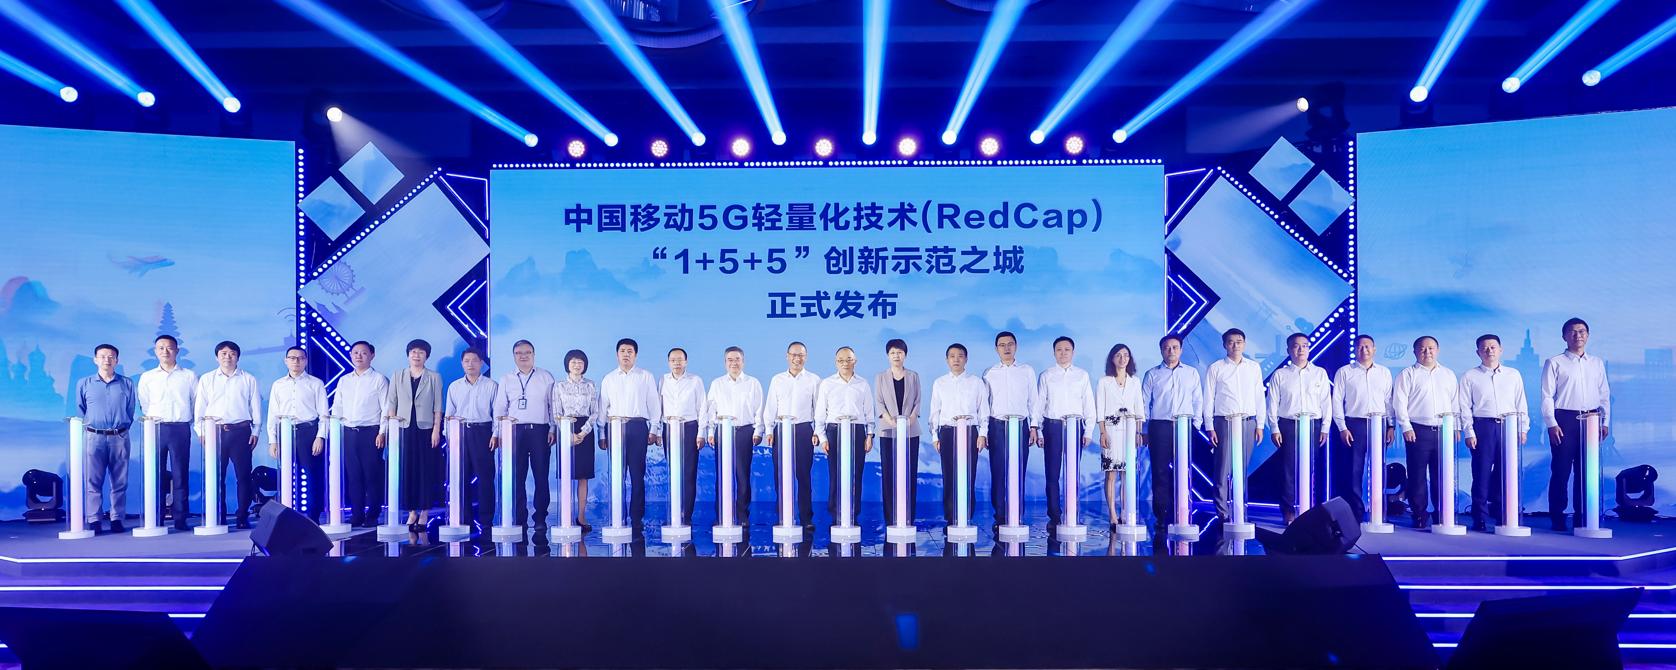 爱立信携手高通及移远通信，成功完成基于中国移动5G现网及商用芯片和模组的RedCap数据及语音测试